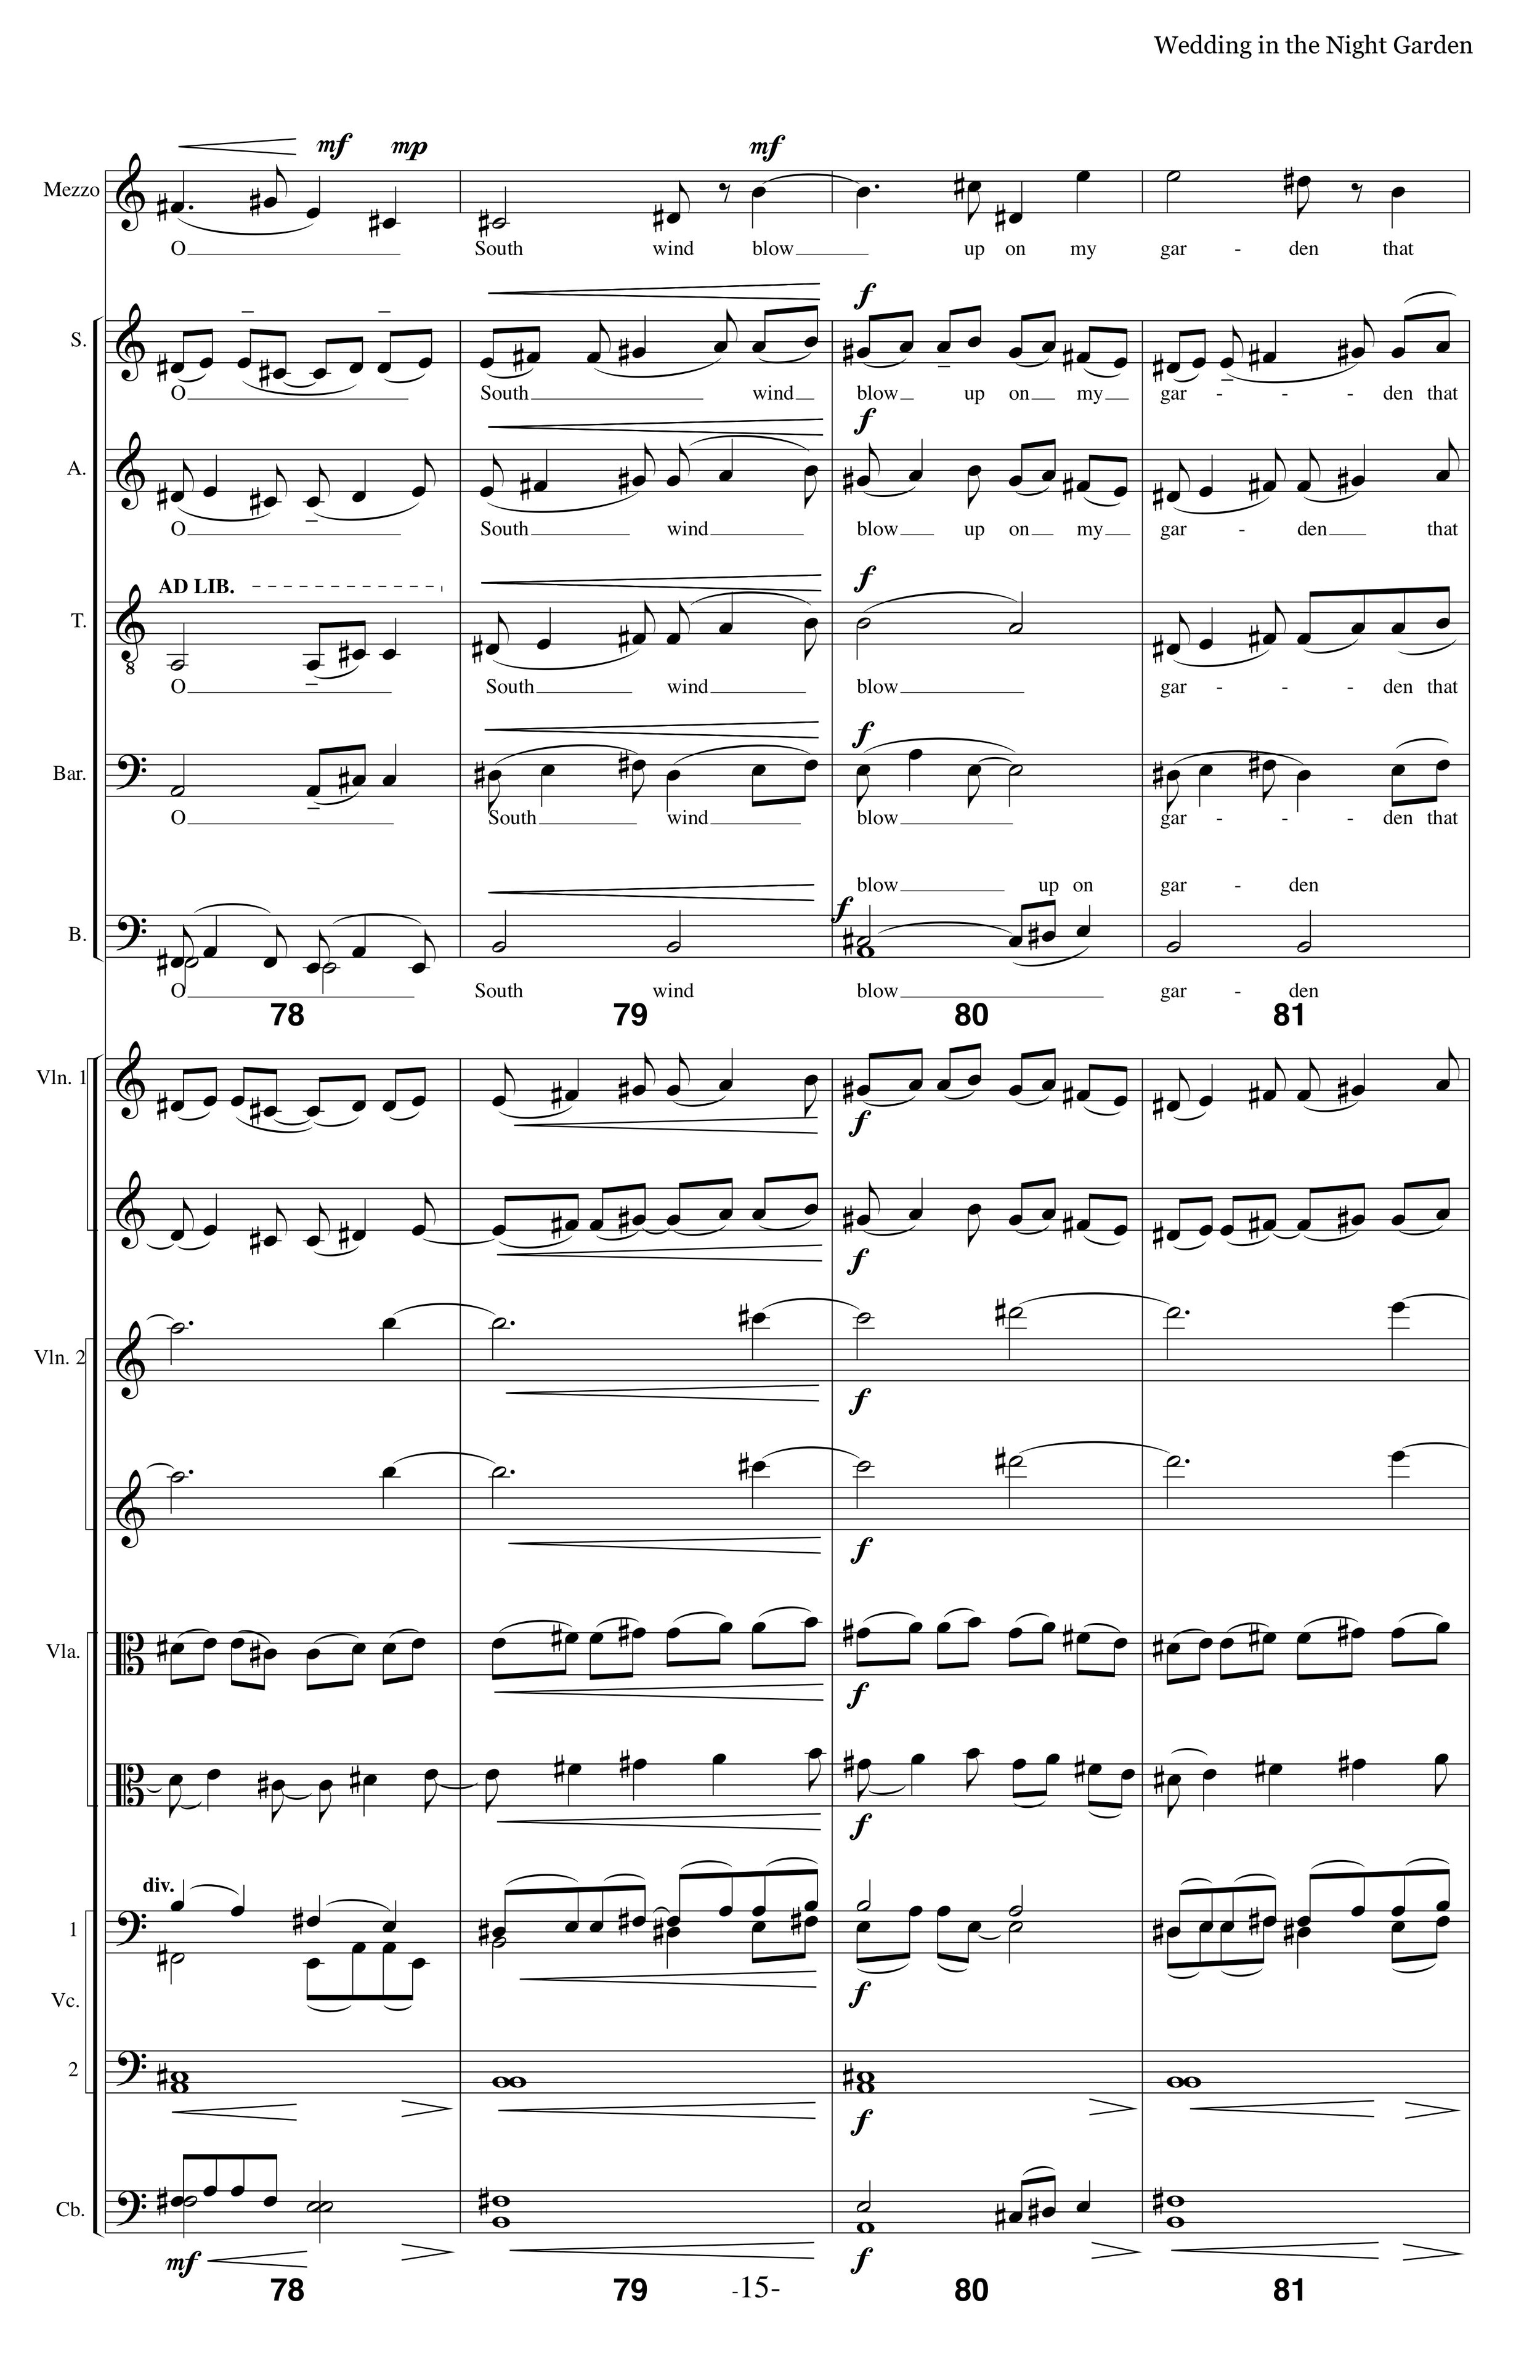 WITNG_MS Strings Choir p15.jpg